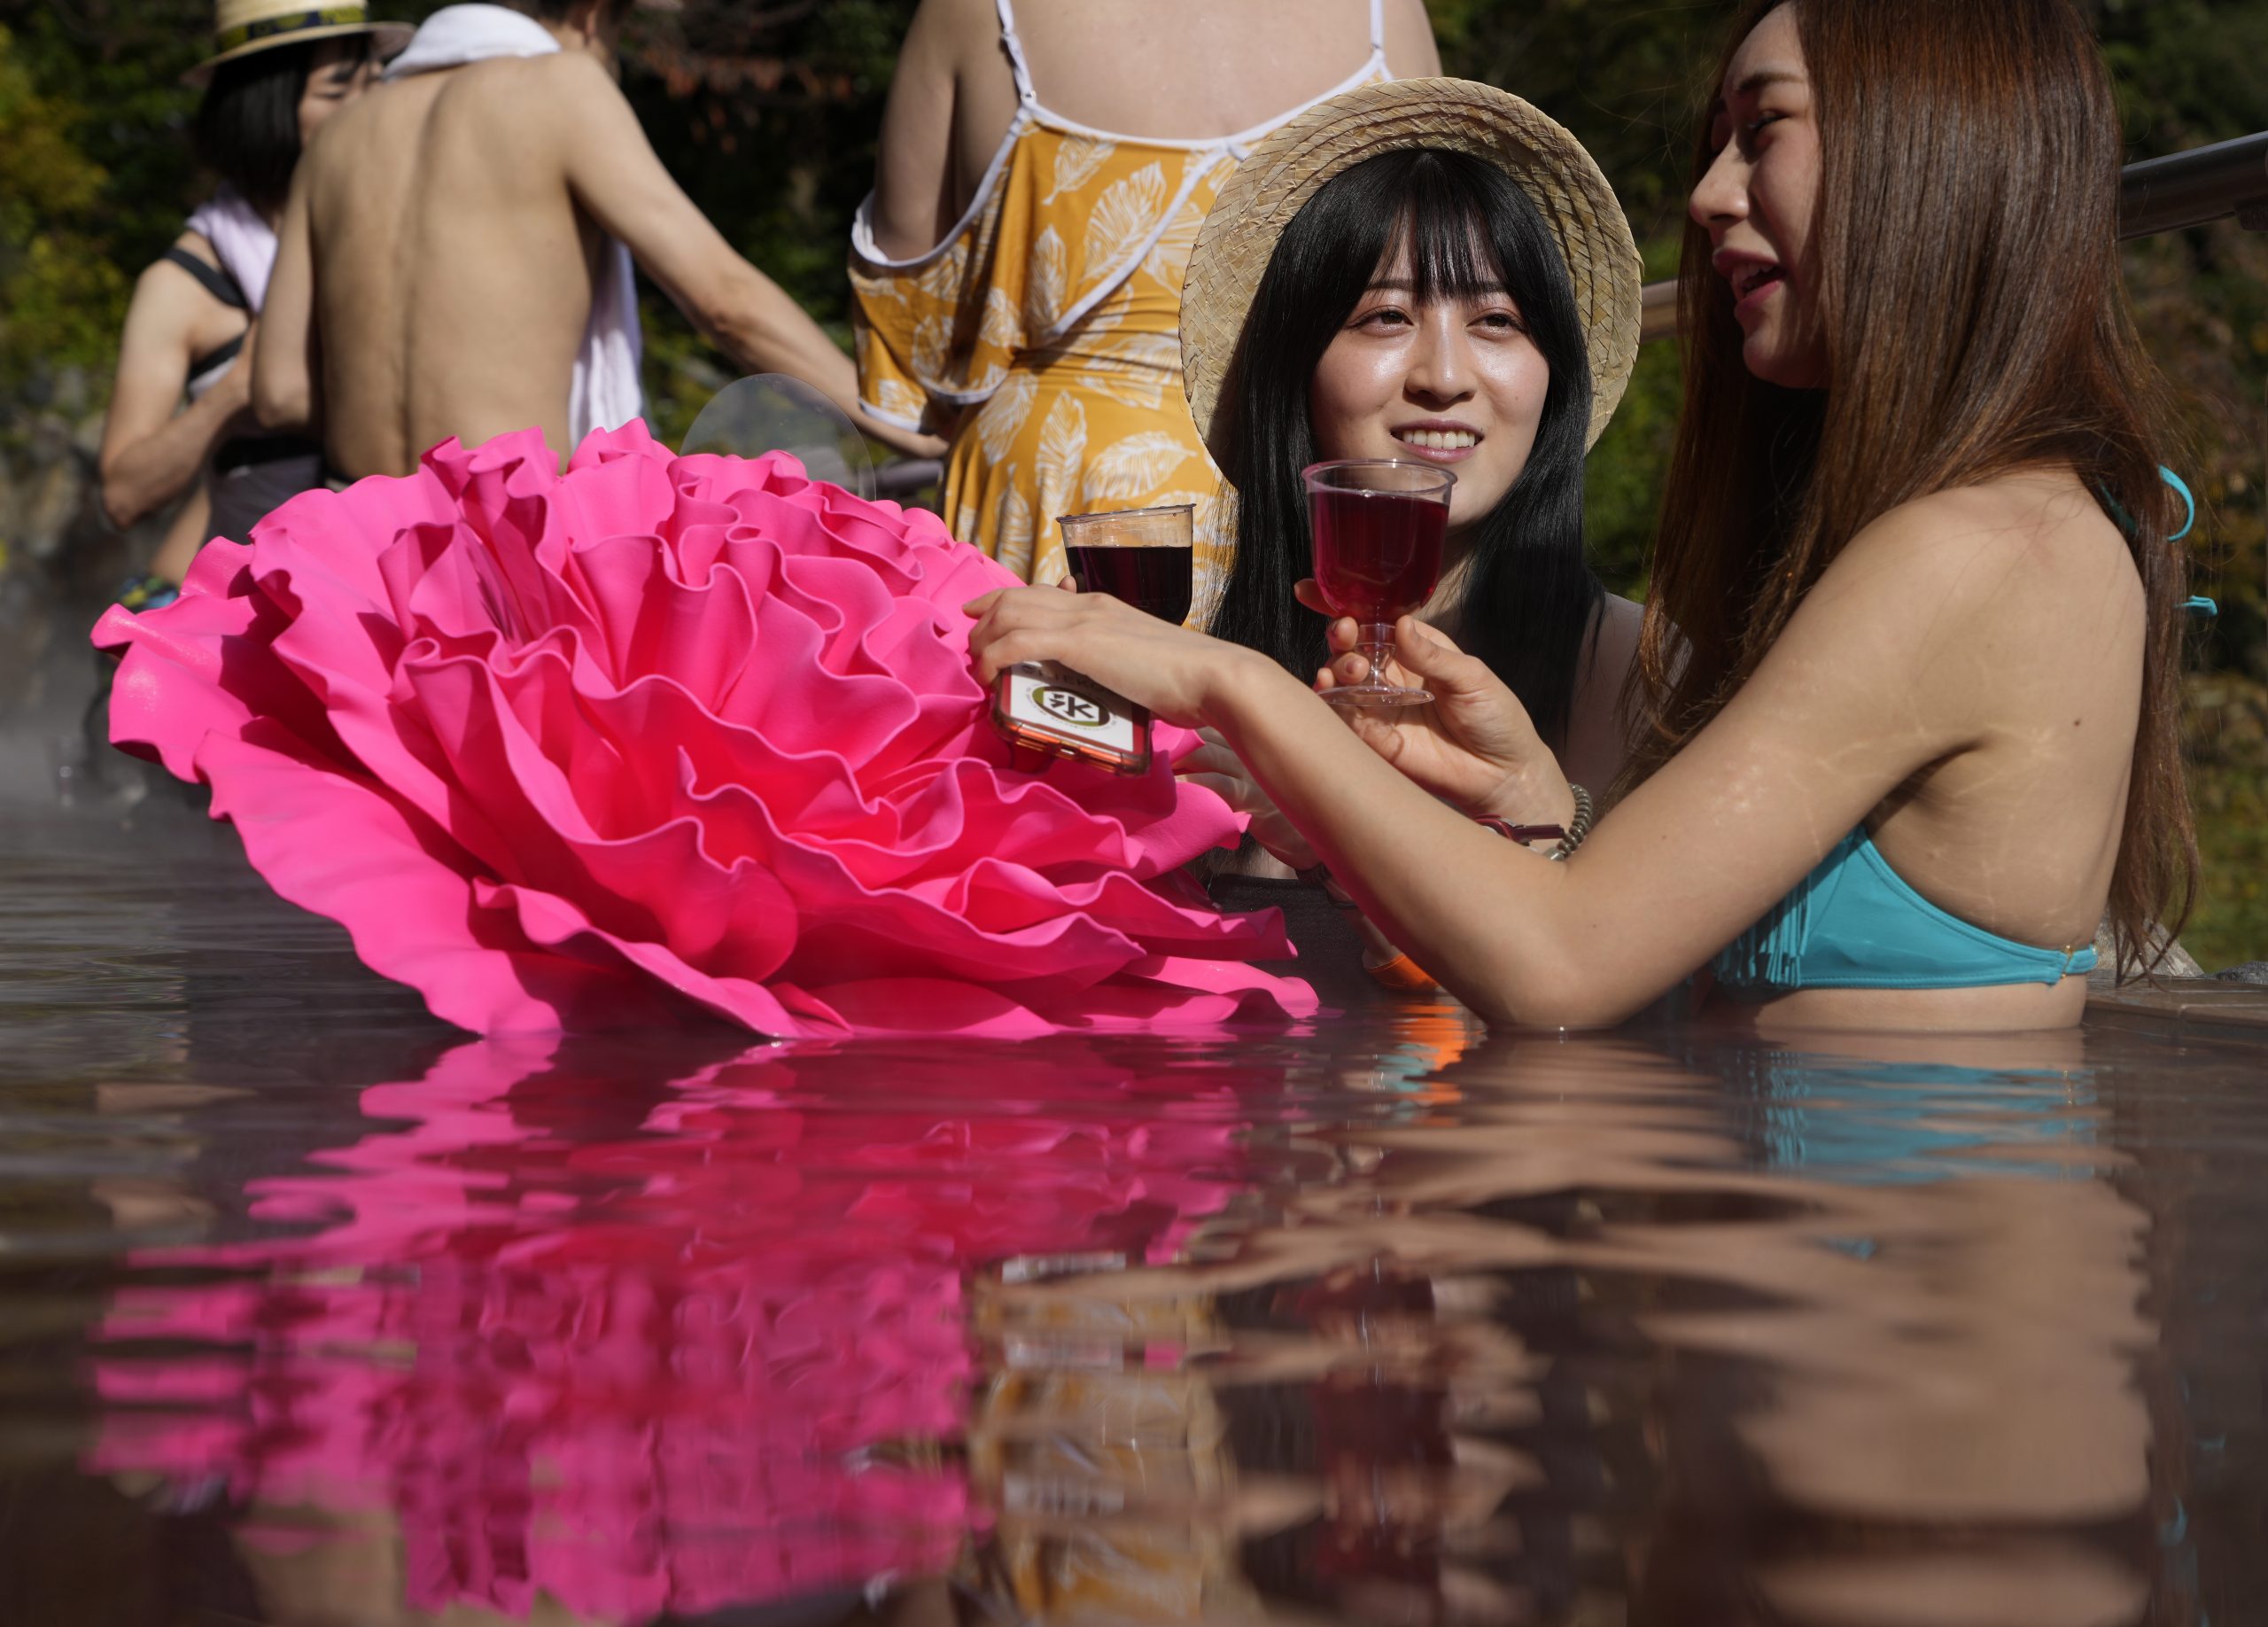 拚图两图日本温泉度假屋办美酒节 游客可边品酒边泡澡